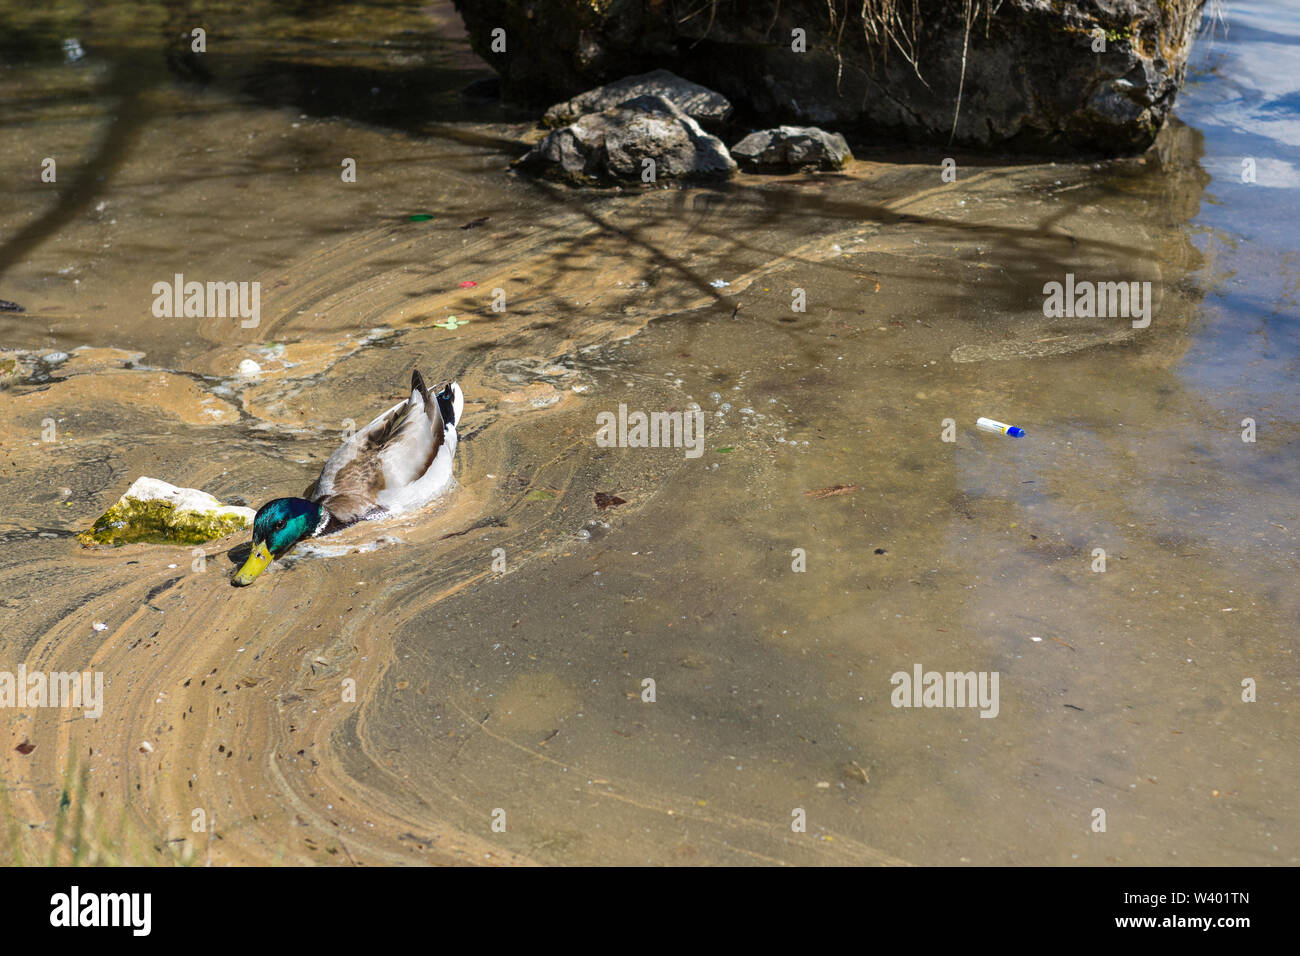 La consapevolezza ambientale: Plastica galleggiante su un mucky lake shore accanto a un'anatra in cerca di cibo Foto Stock